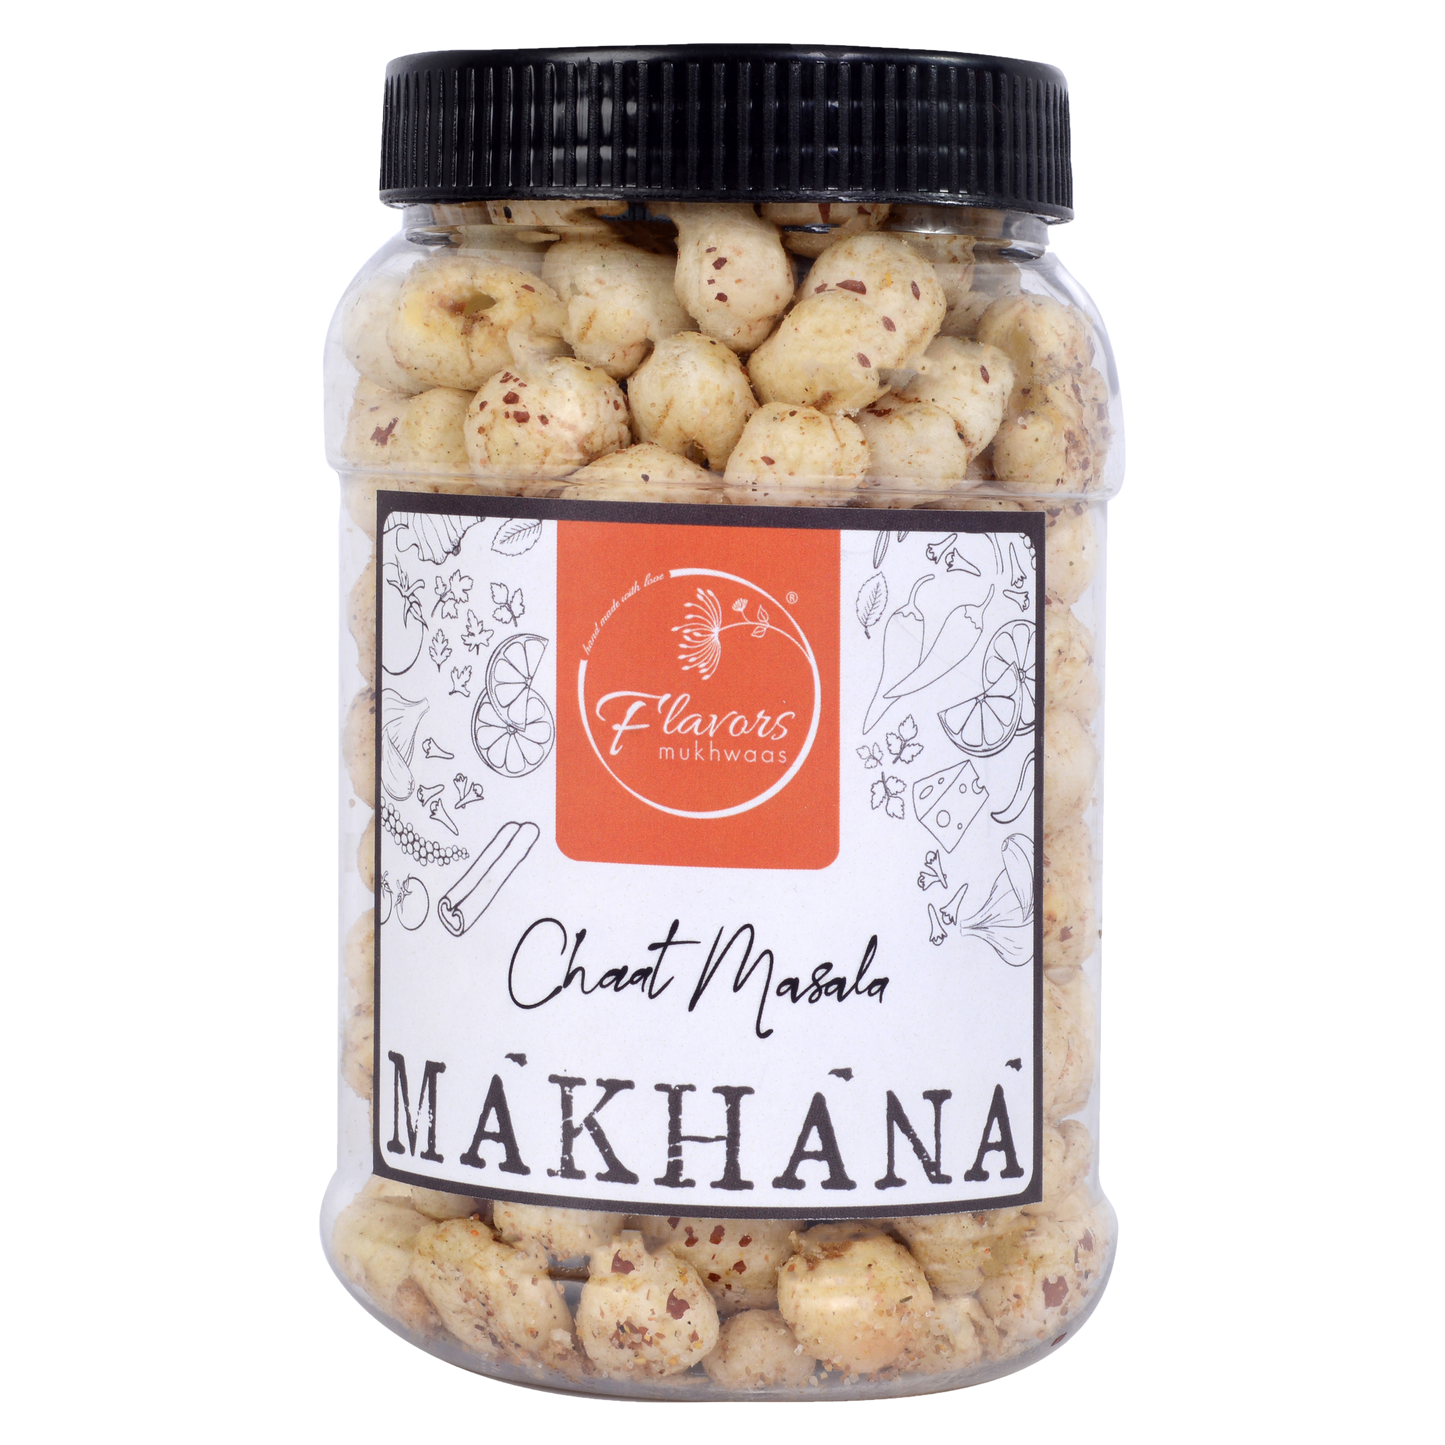 Chaat Masala Makhana (Fox Nuts) flavors mukhwaas